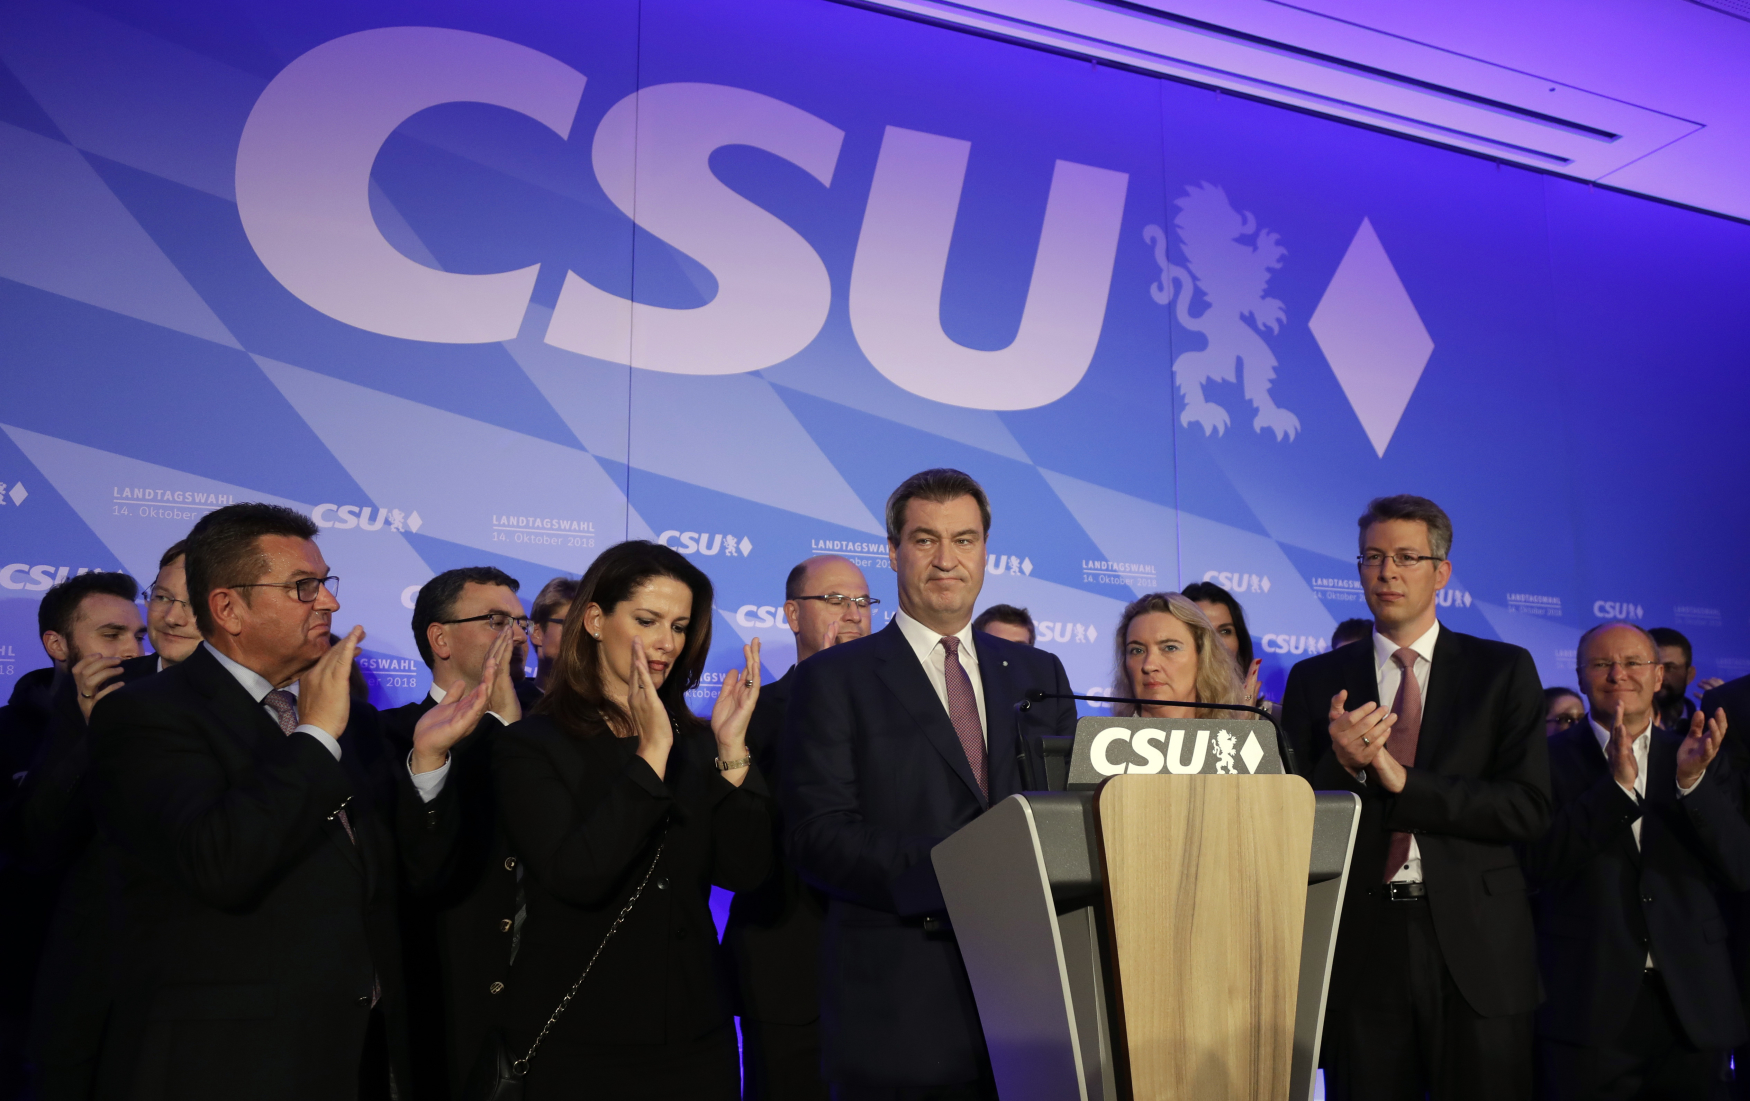 V Bavorsku vyhrála Křesťansko-sociální unie, utrpěla však citelné stráty